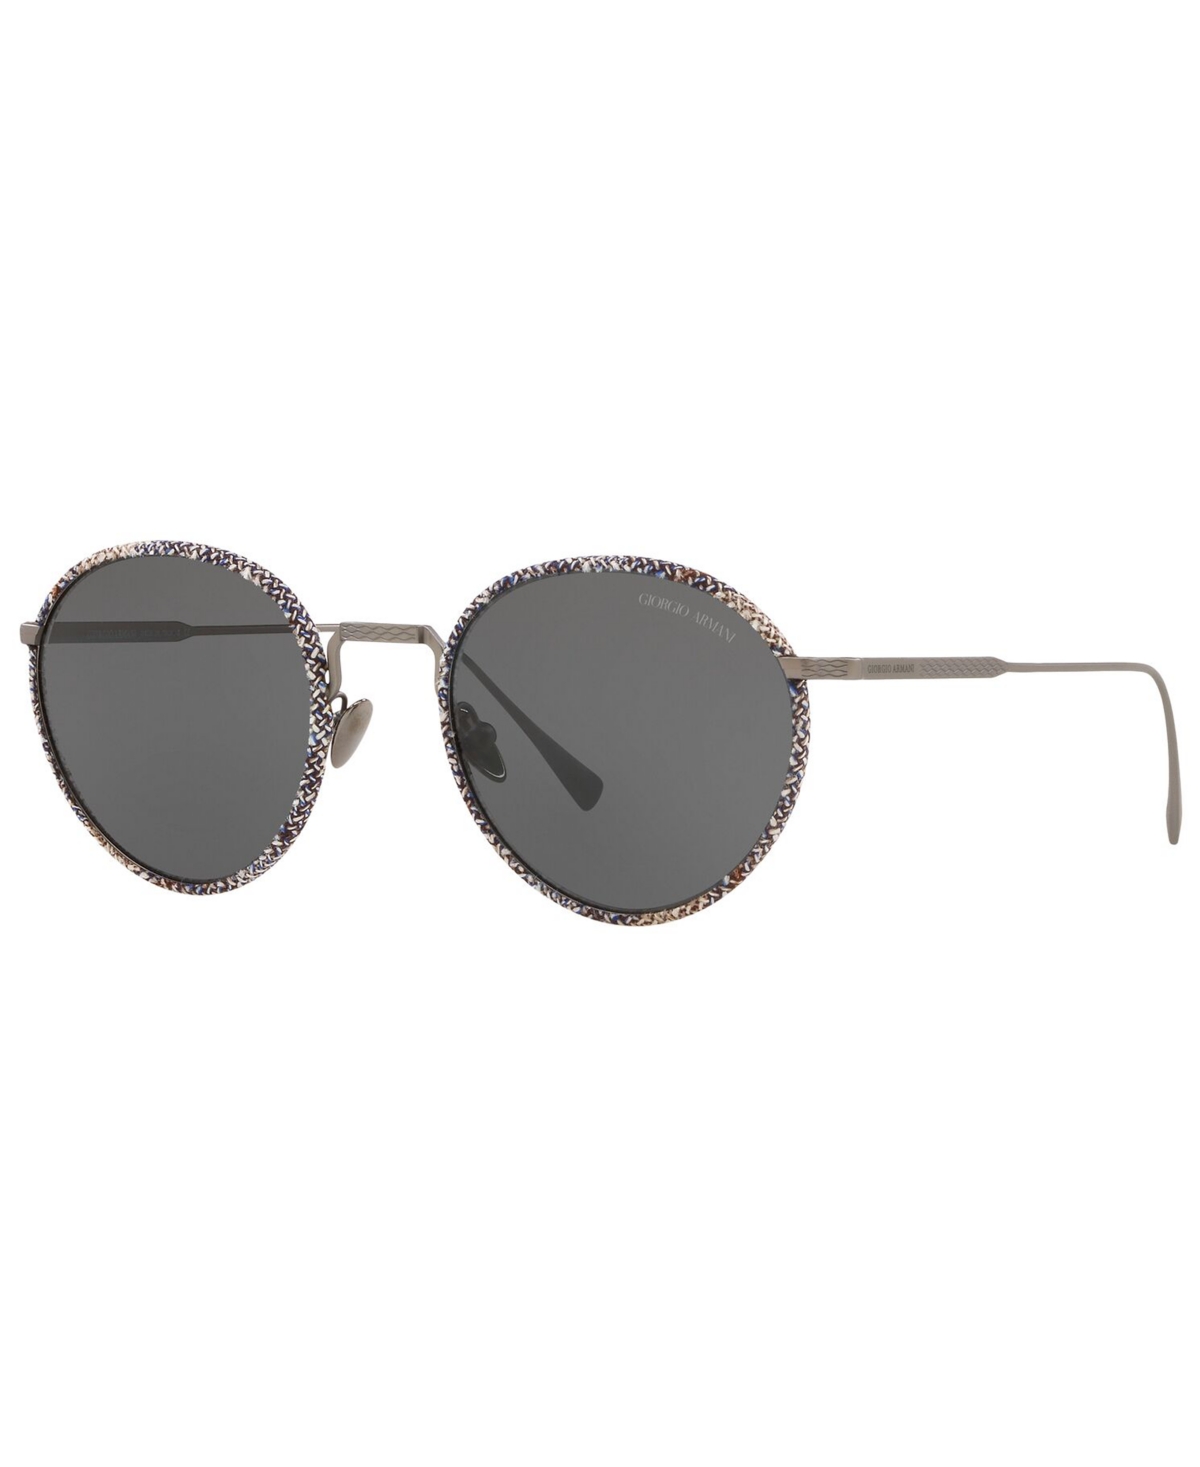 Giorgio Armani Men's Sunglasses In Metallic